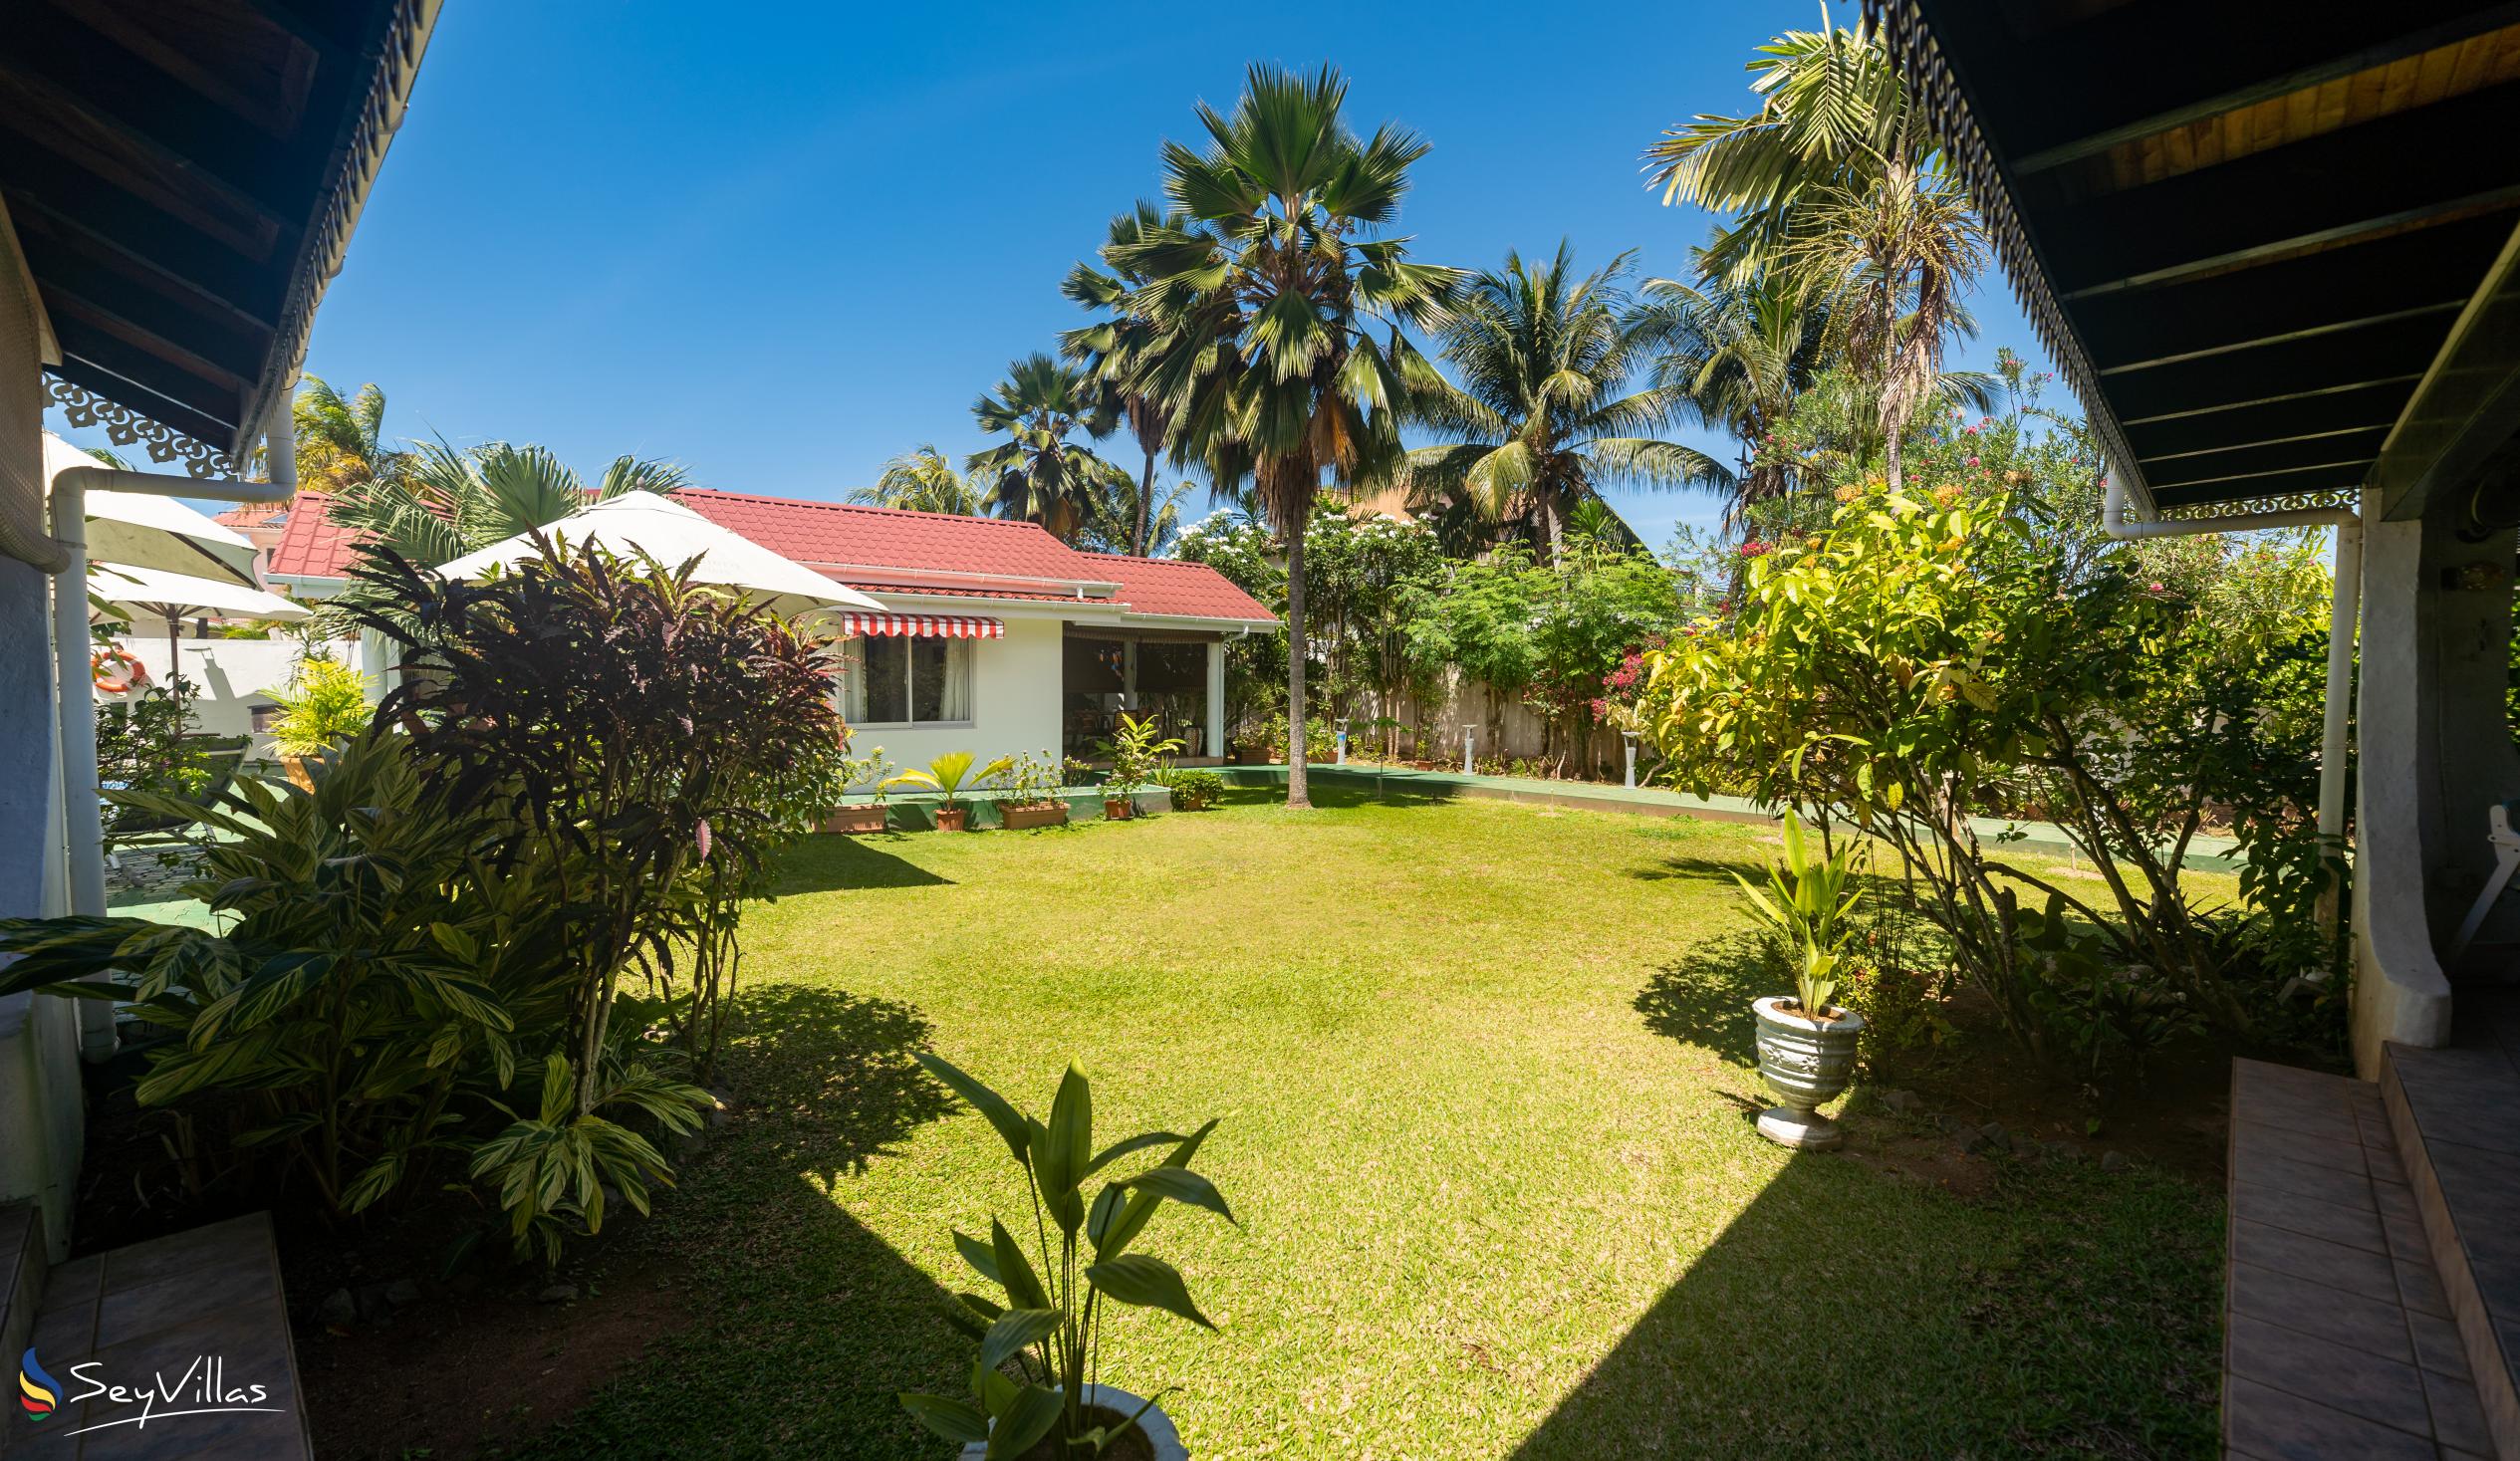 Foto 13: Villa Caballero - Extérieur - Mahé (Seychelles)